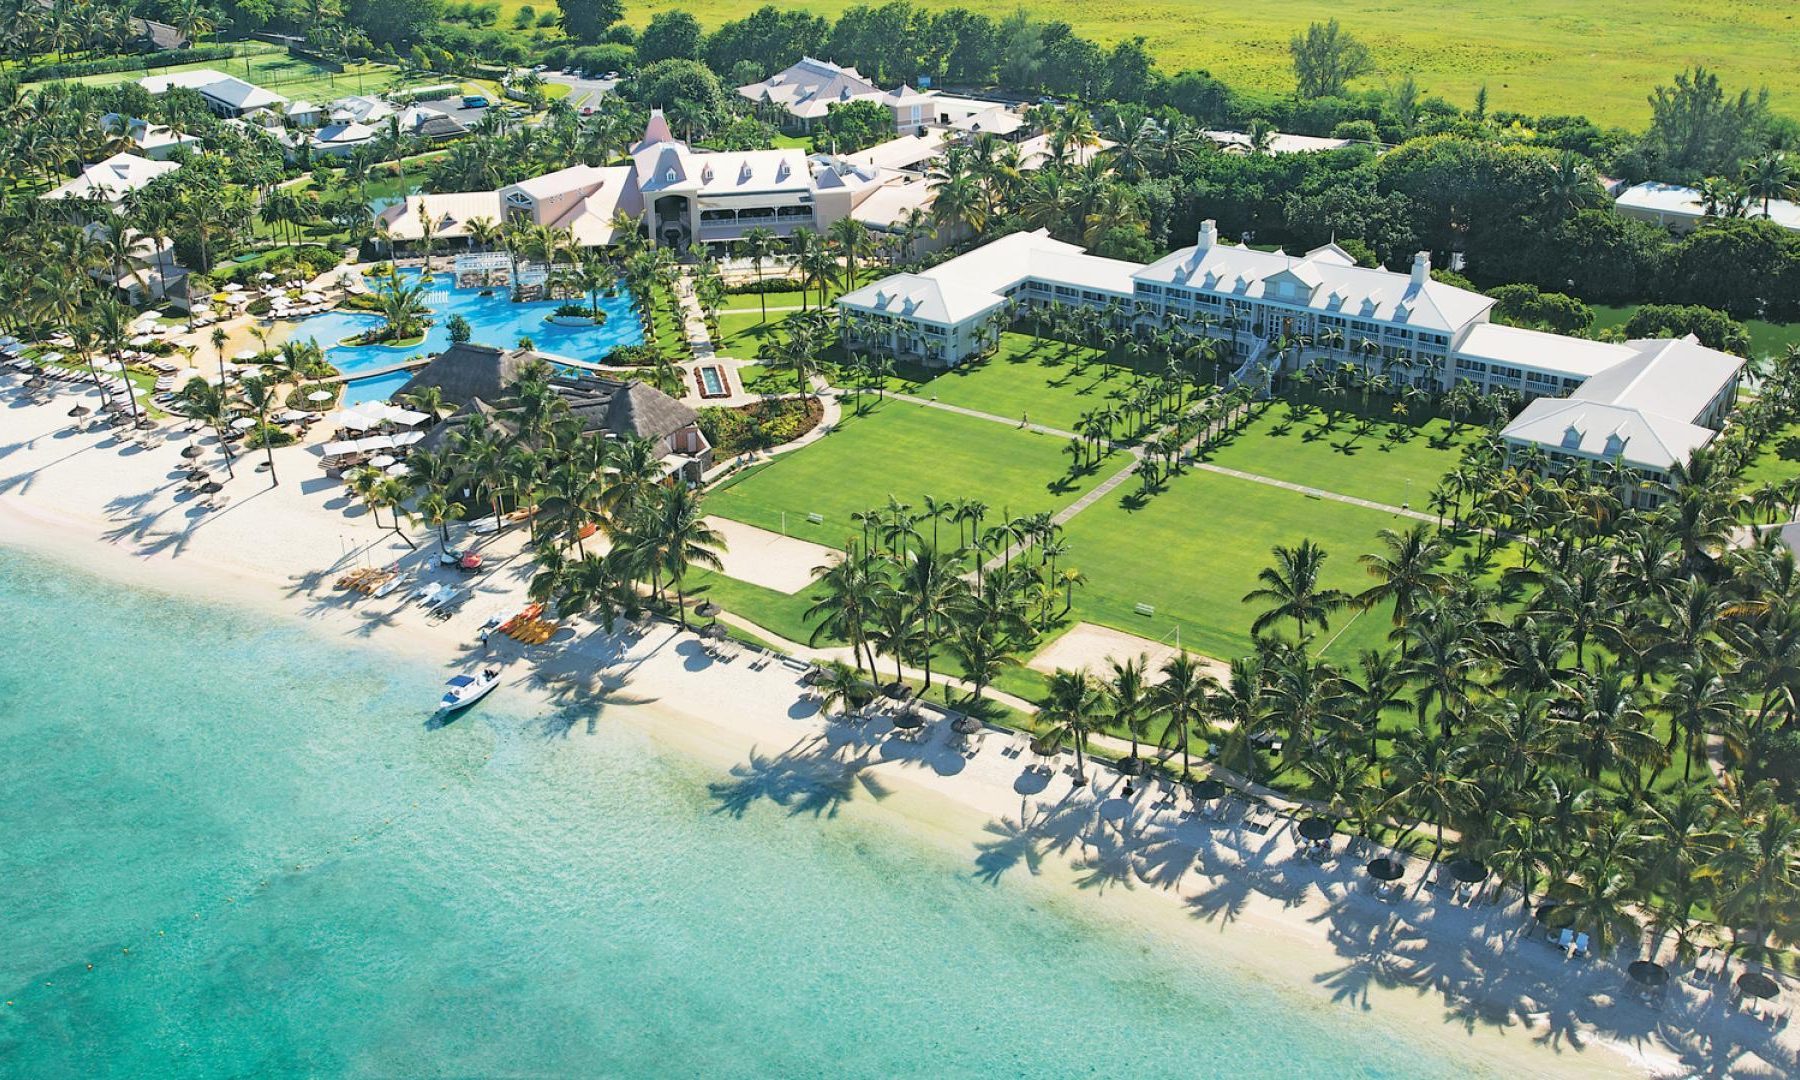 Oferta nunta si luna de miere in Mauritius – hotel Sugar Beach 5*